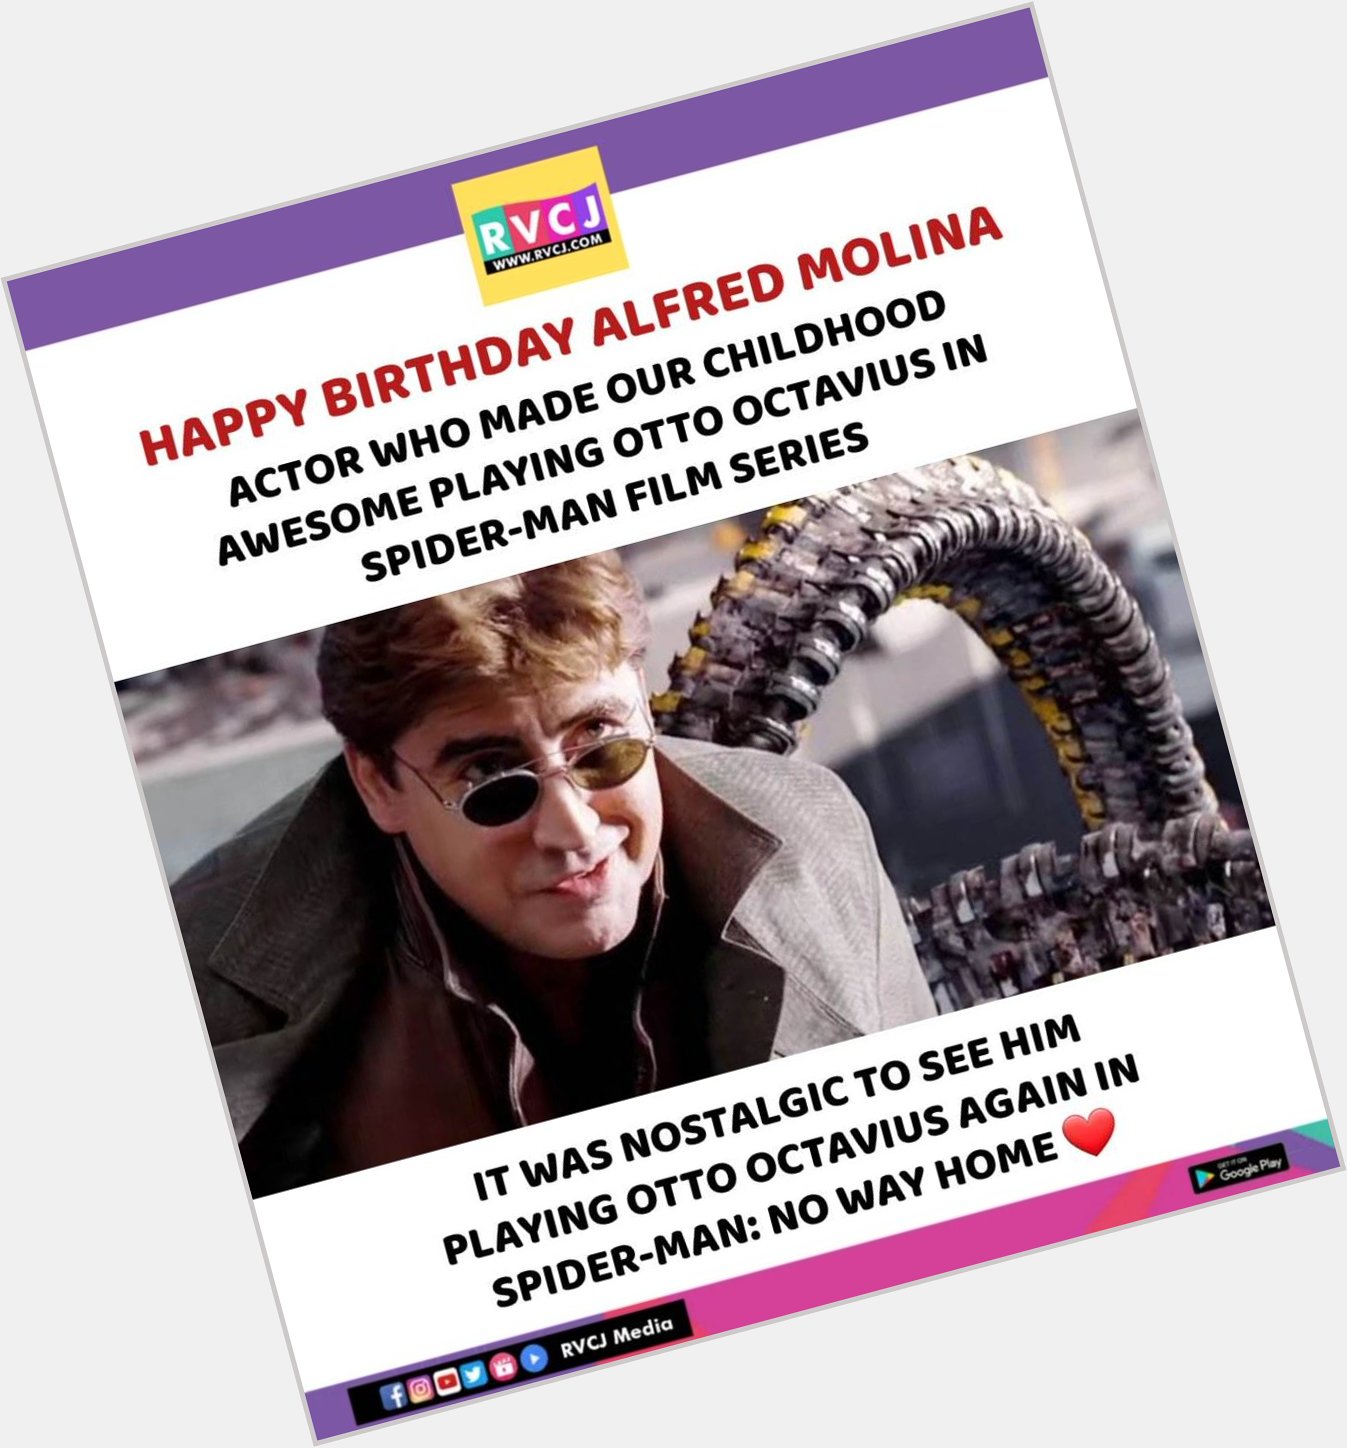 Happy Birthday Alfred Molina   